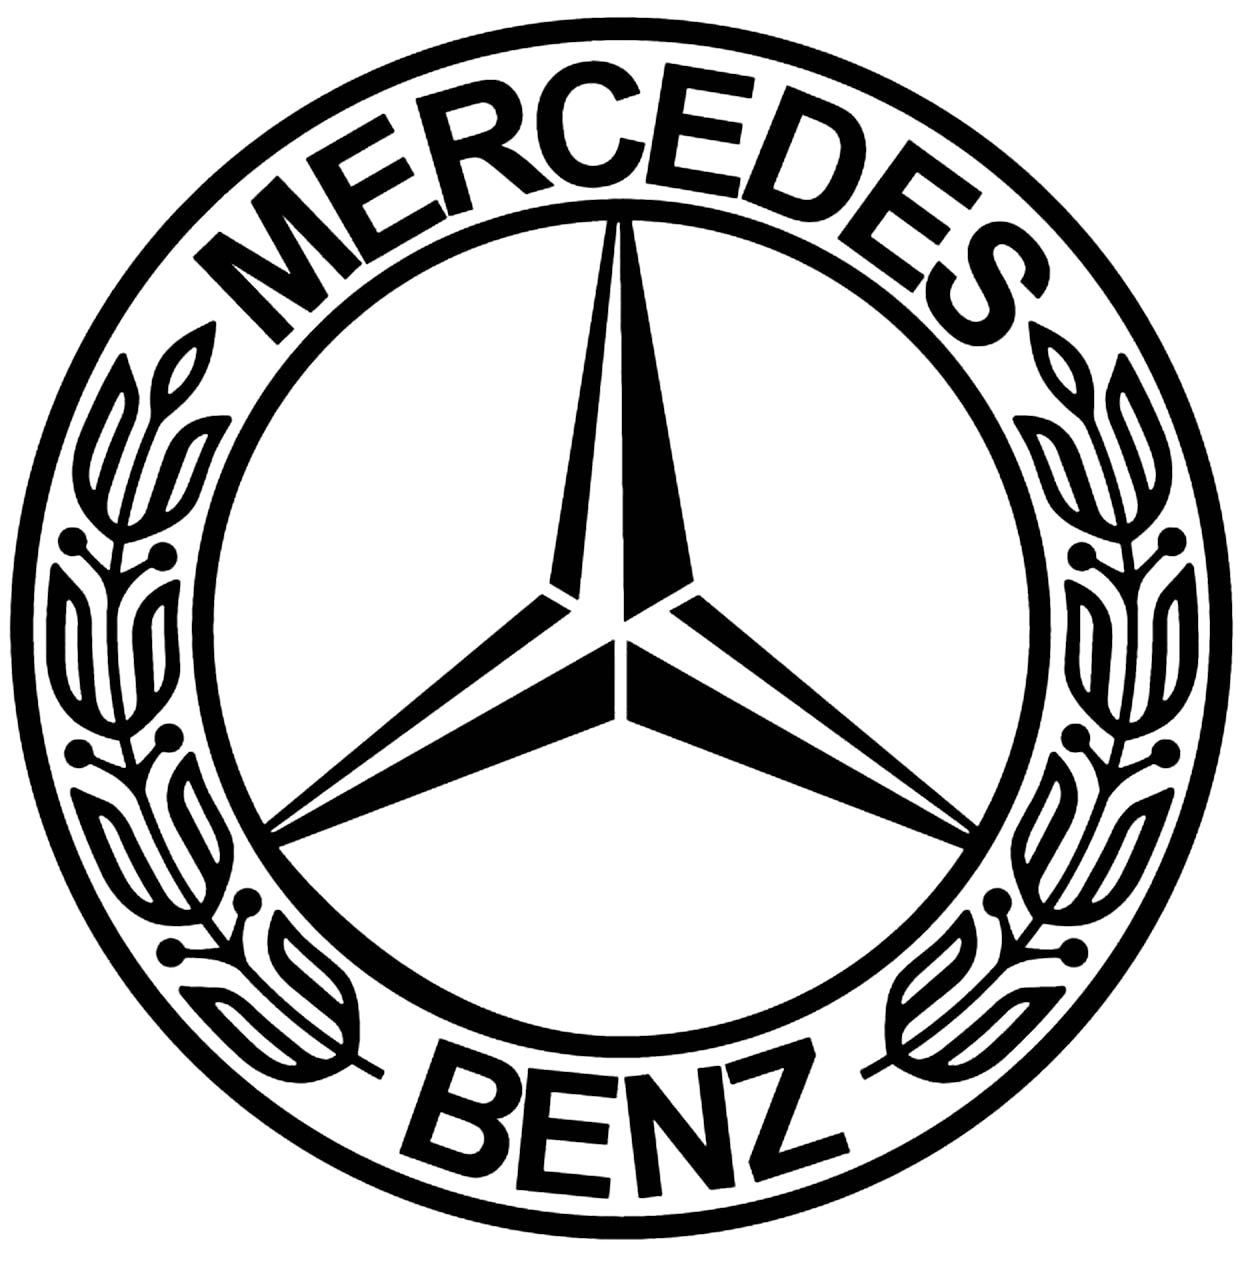 Mercedes Logo - Free Transparent PNG Logos